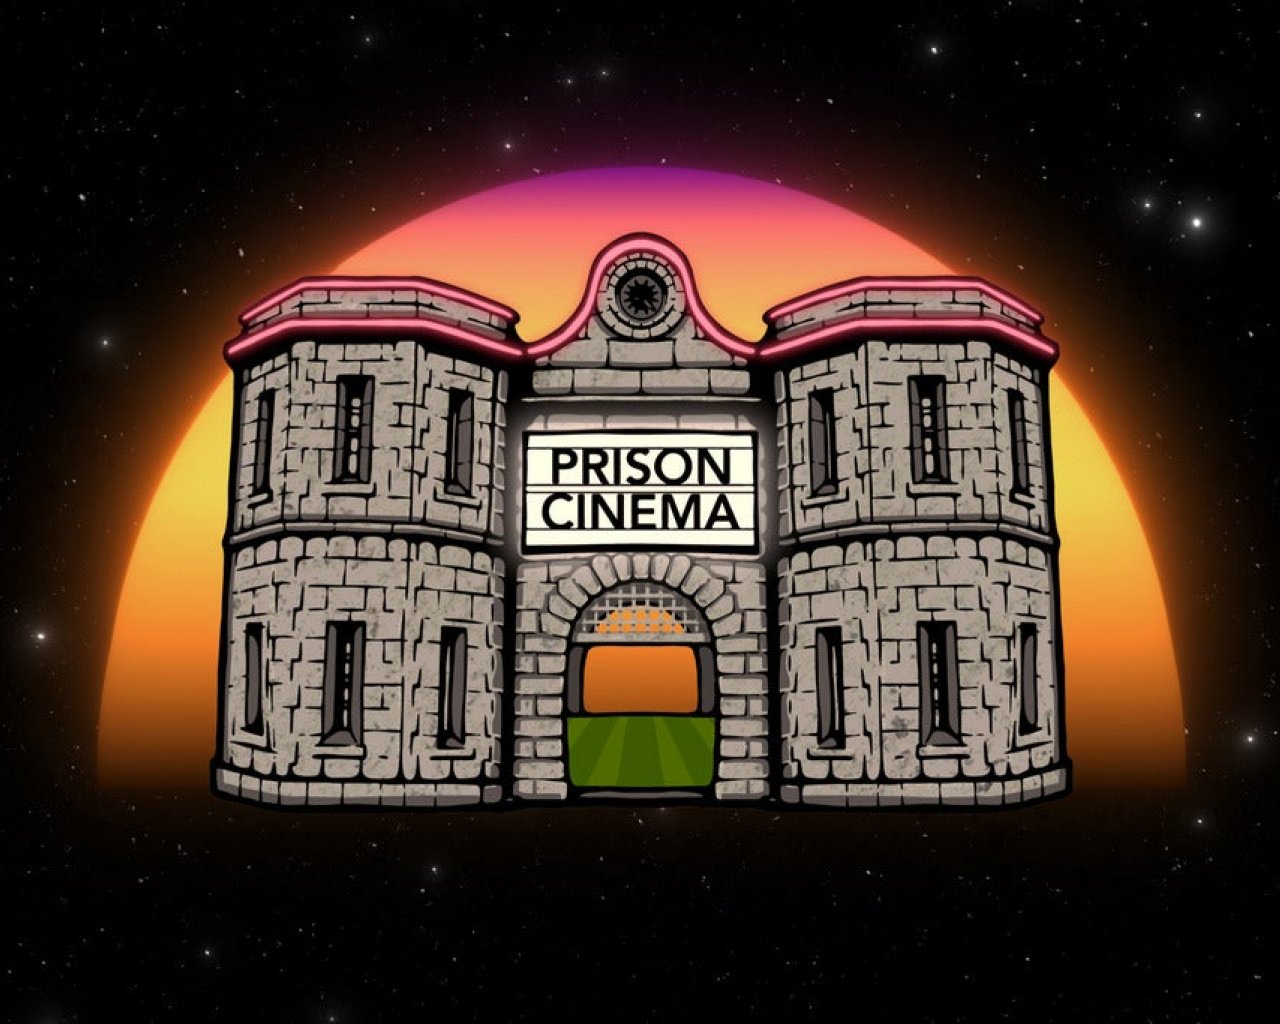 Prison Cinema